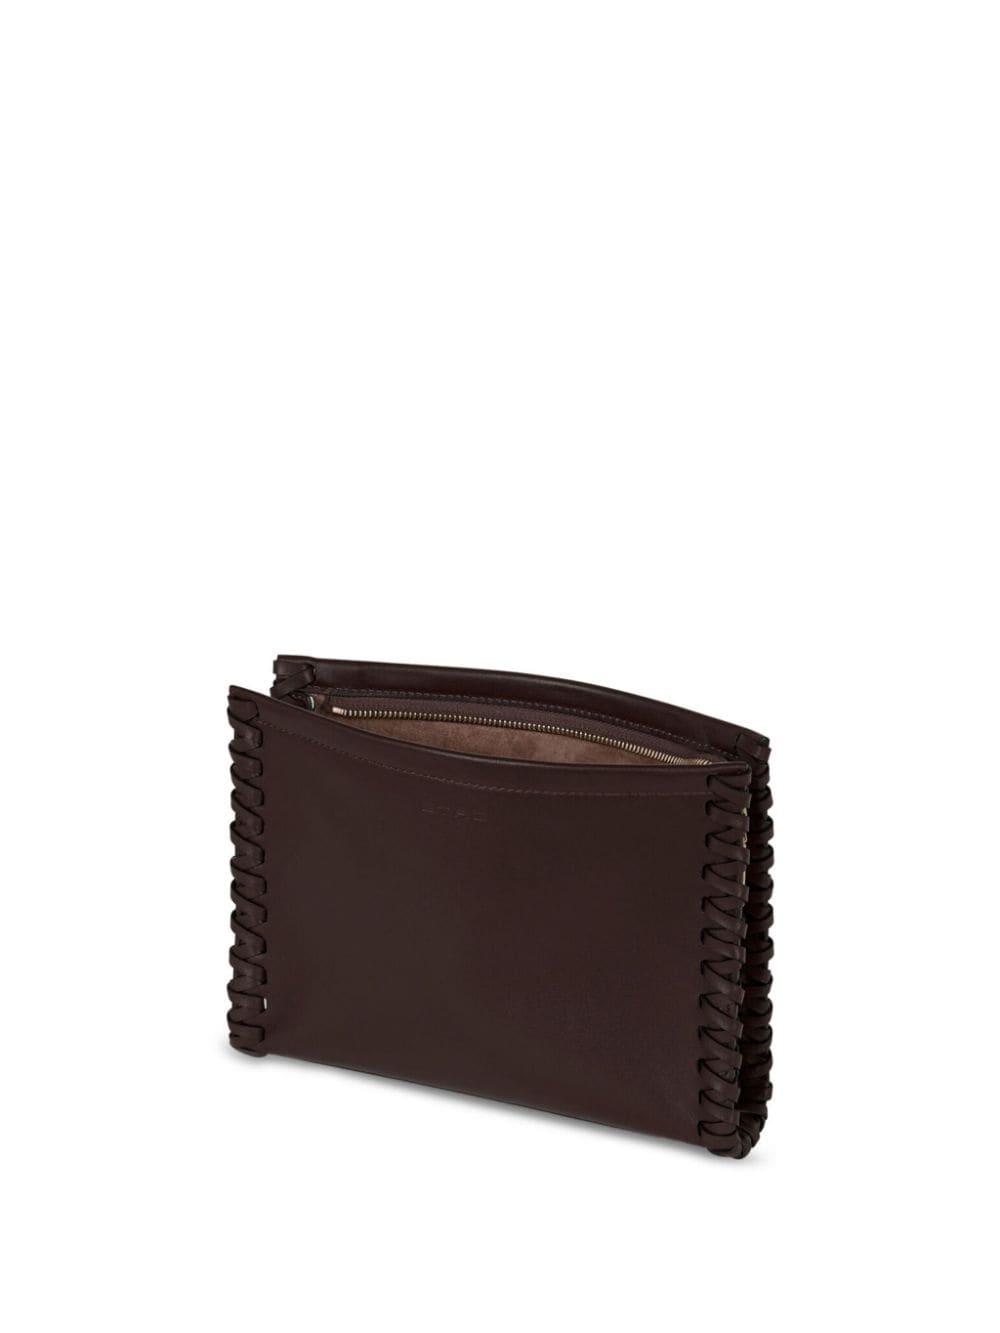 medium braided leather clutch bag - 4